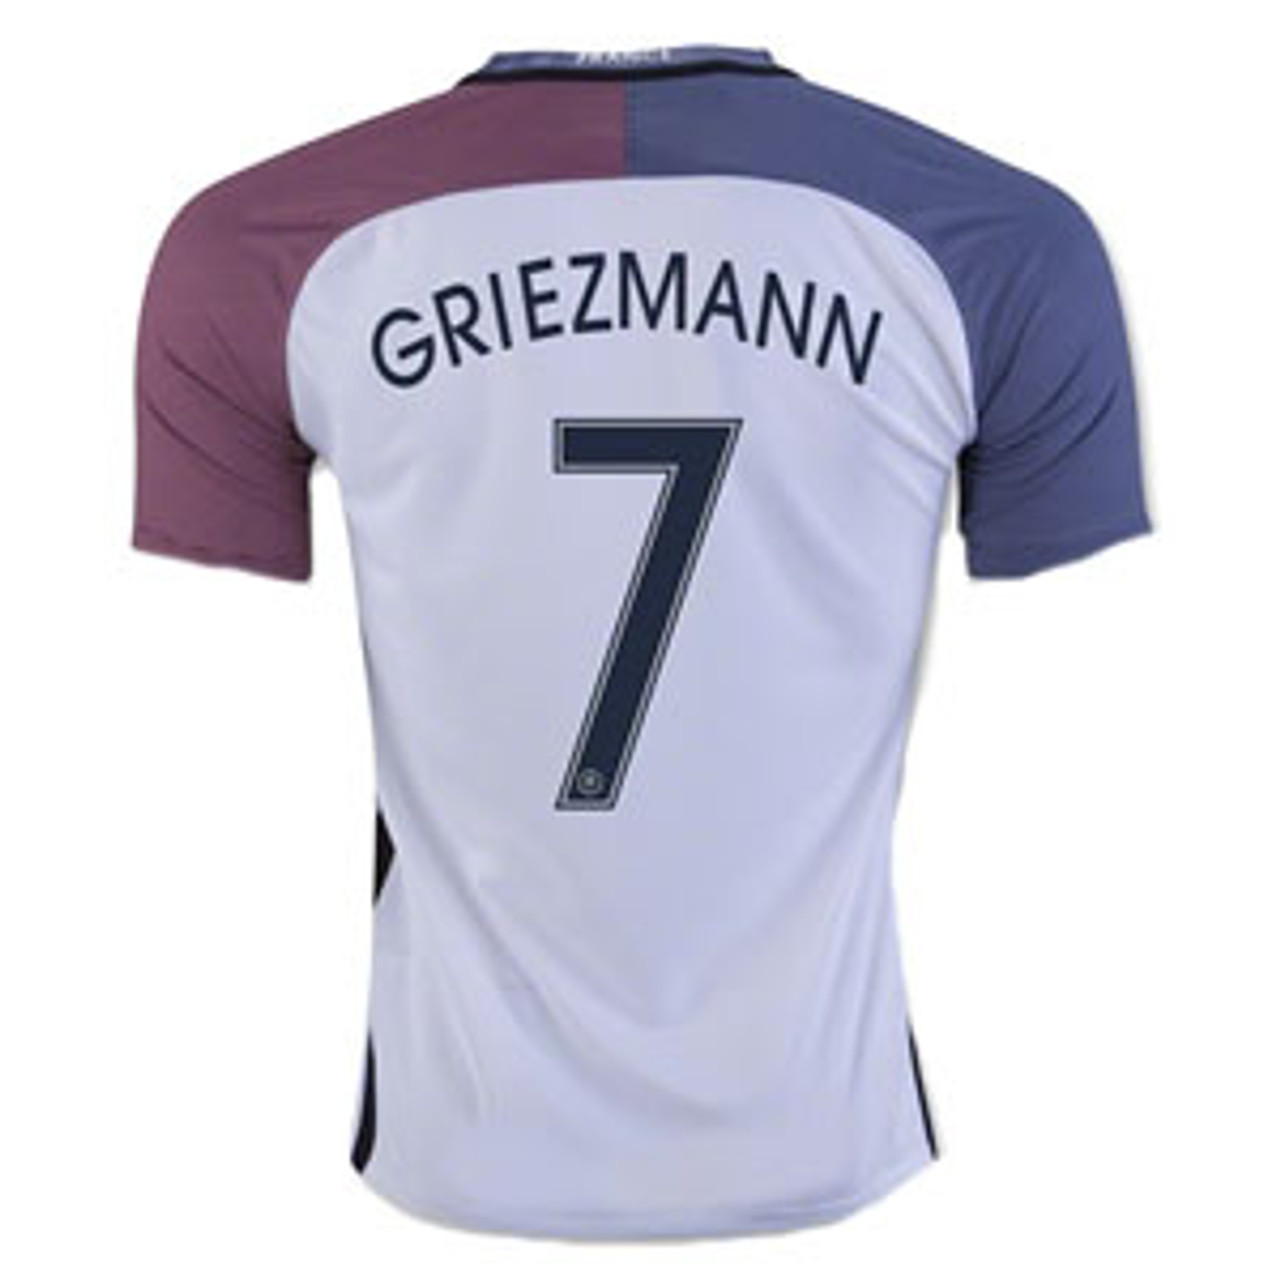 griezmann france away jersey